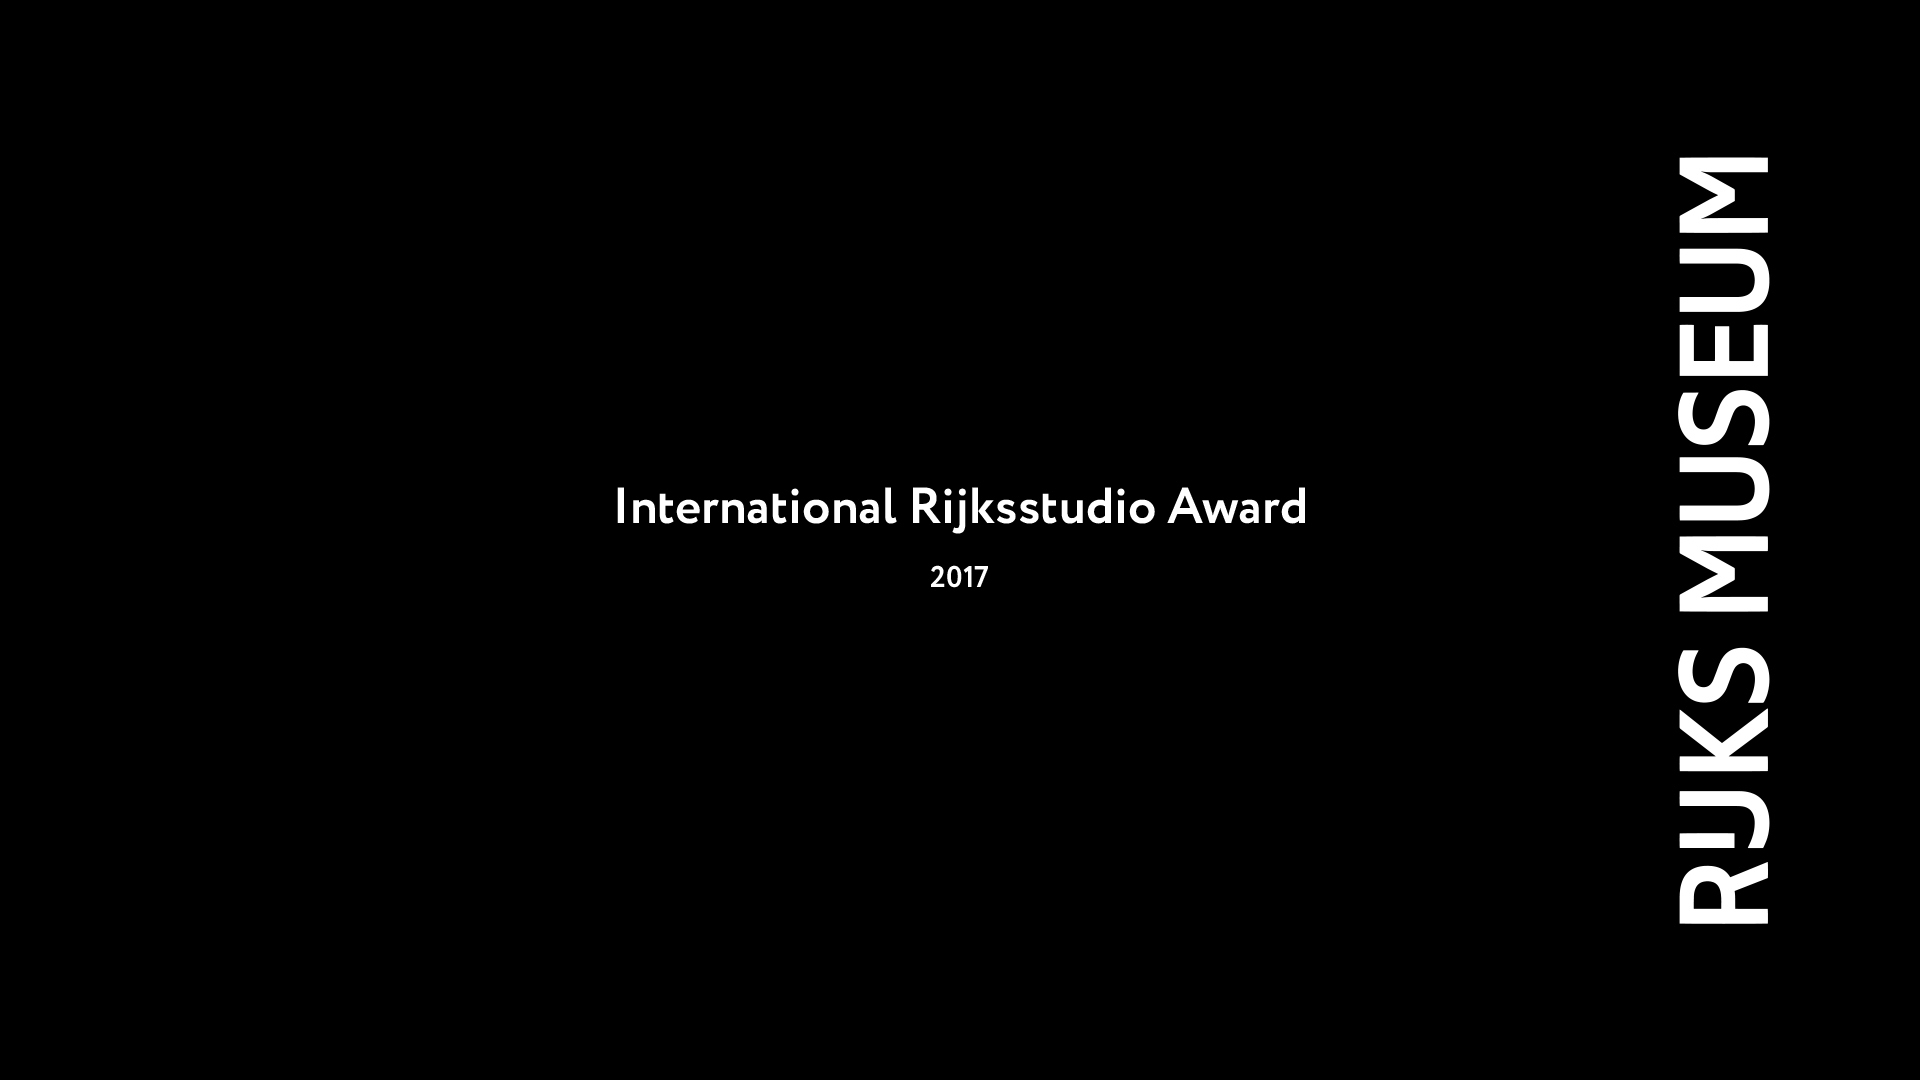 Леша Лимонов, Дизайн этикетки, Дизайн упаковки, International Rijksstudio Award 2017